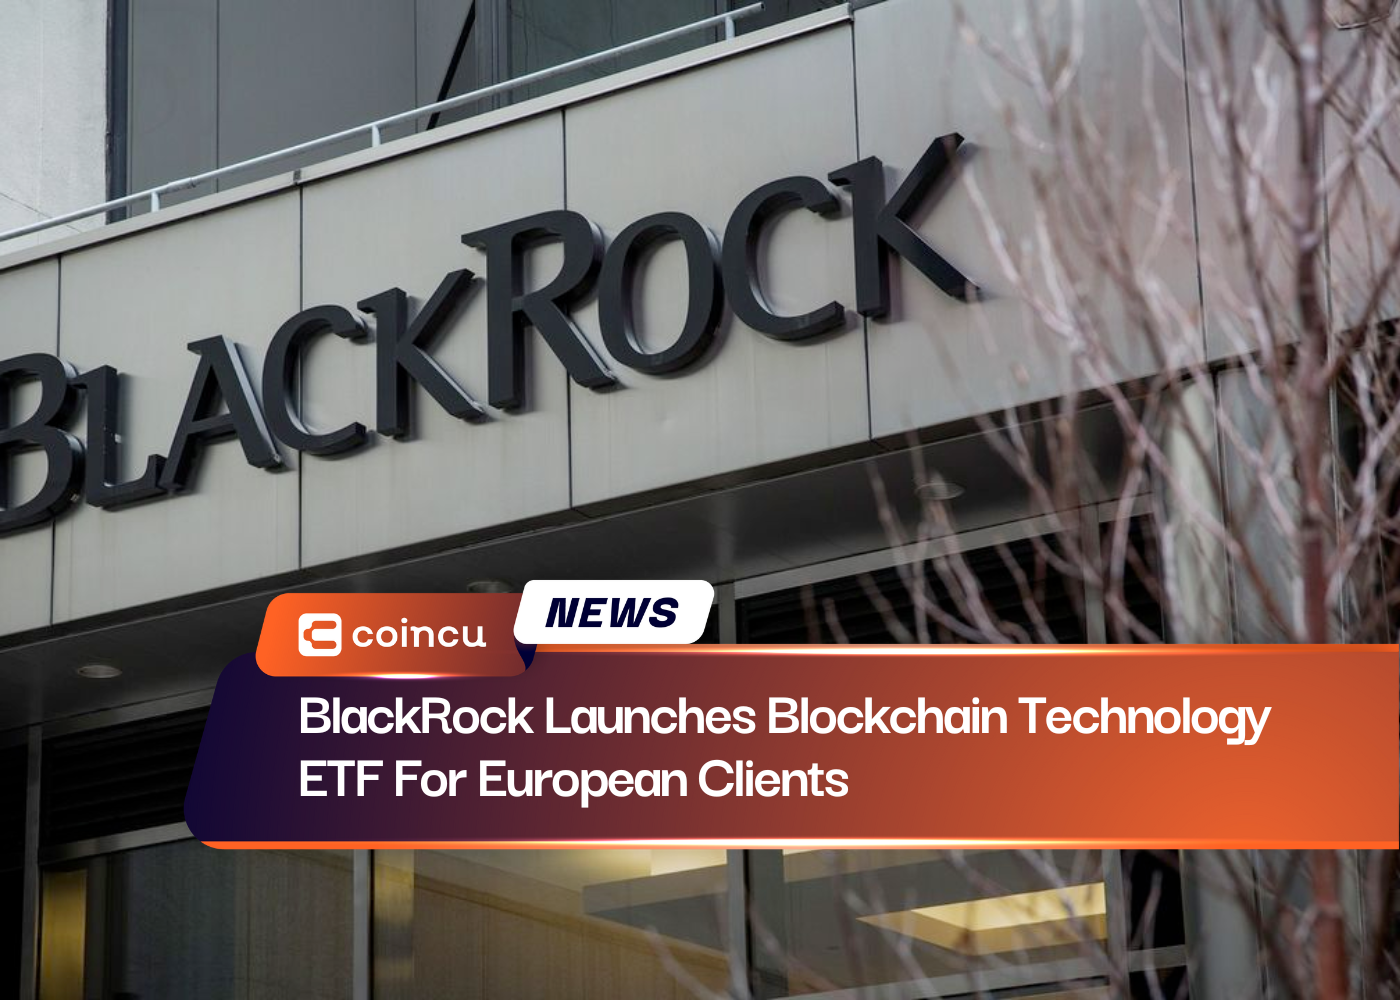 BlackRock Launches Blockchain Technology ETF For European Clients